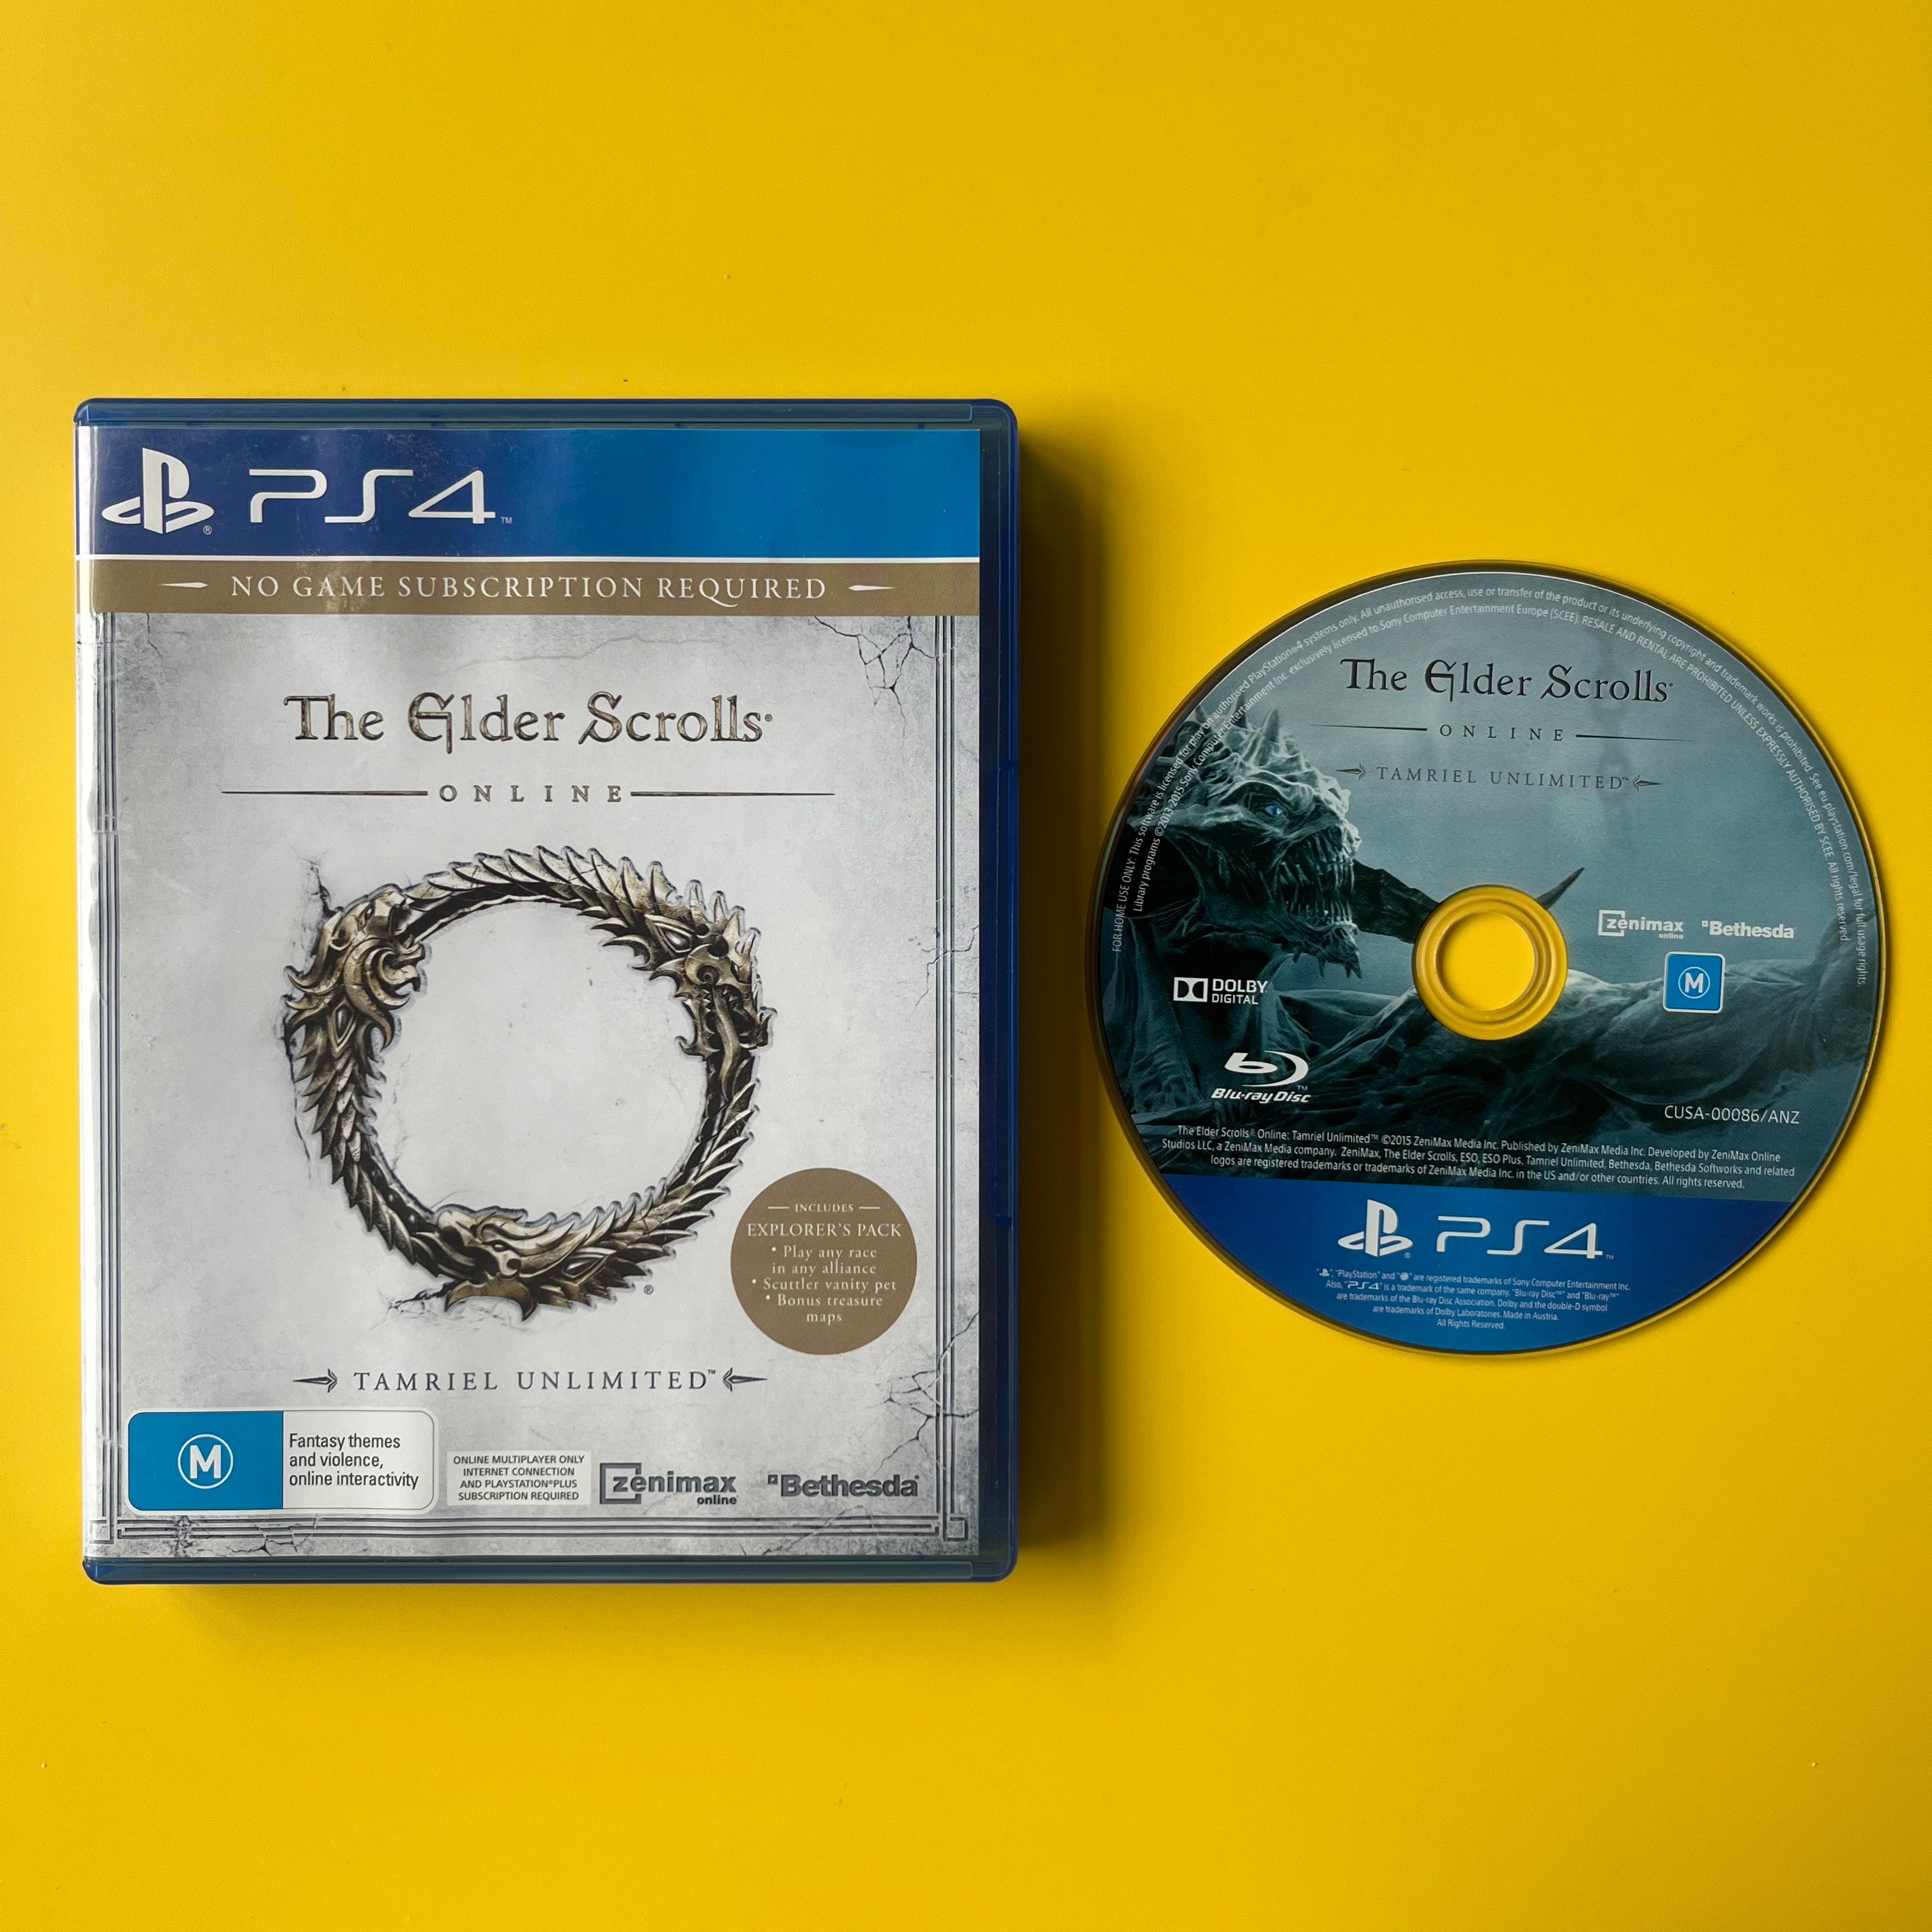 PS4 - The Elder Scrolls - Online